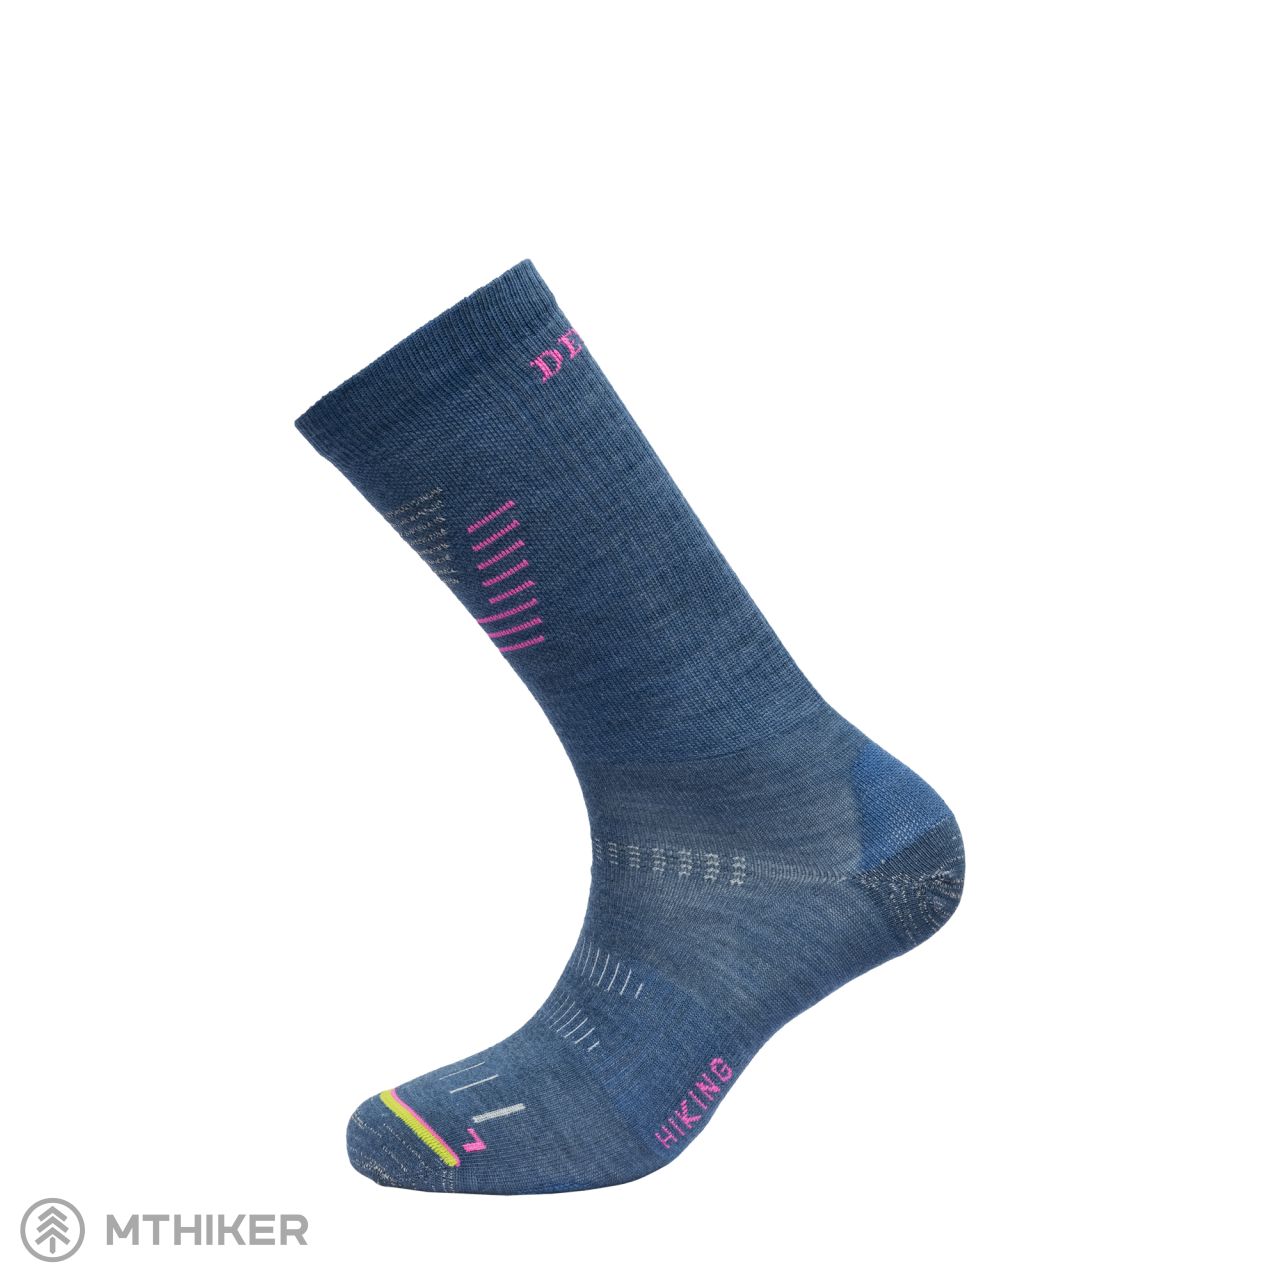 Hiking Merino Light Women's woolen socks Blue - MTBIKER.shop